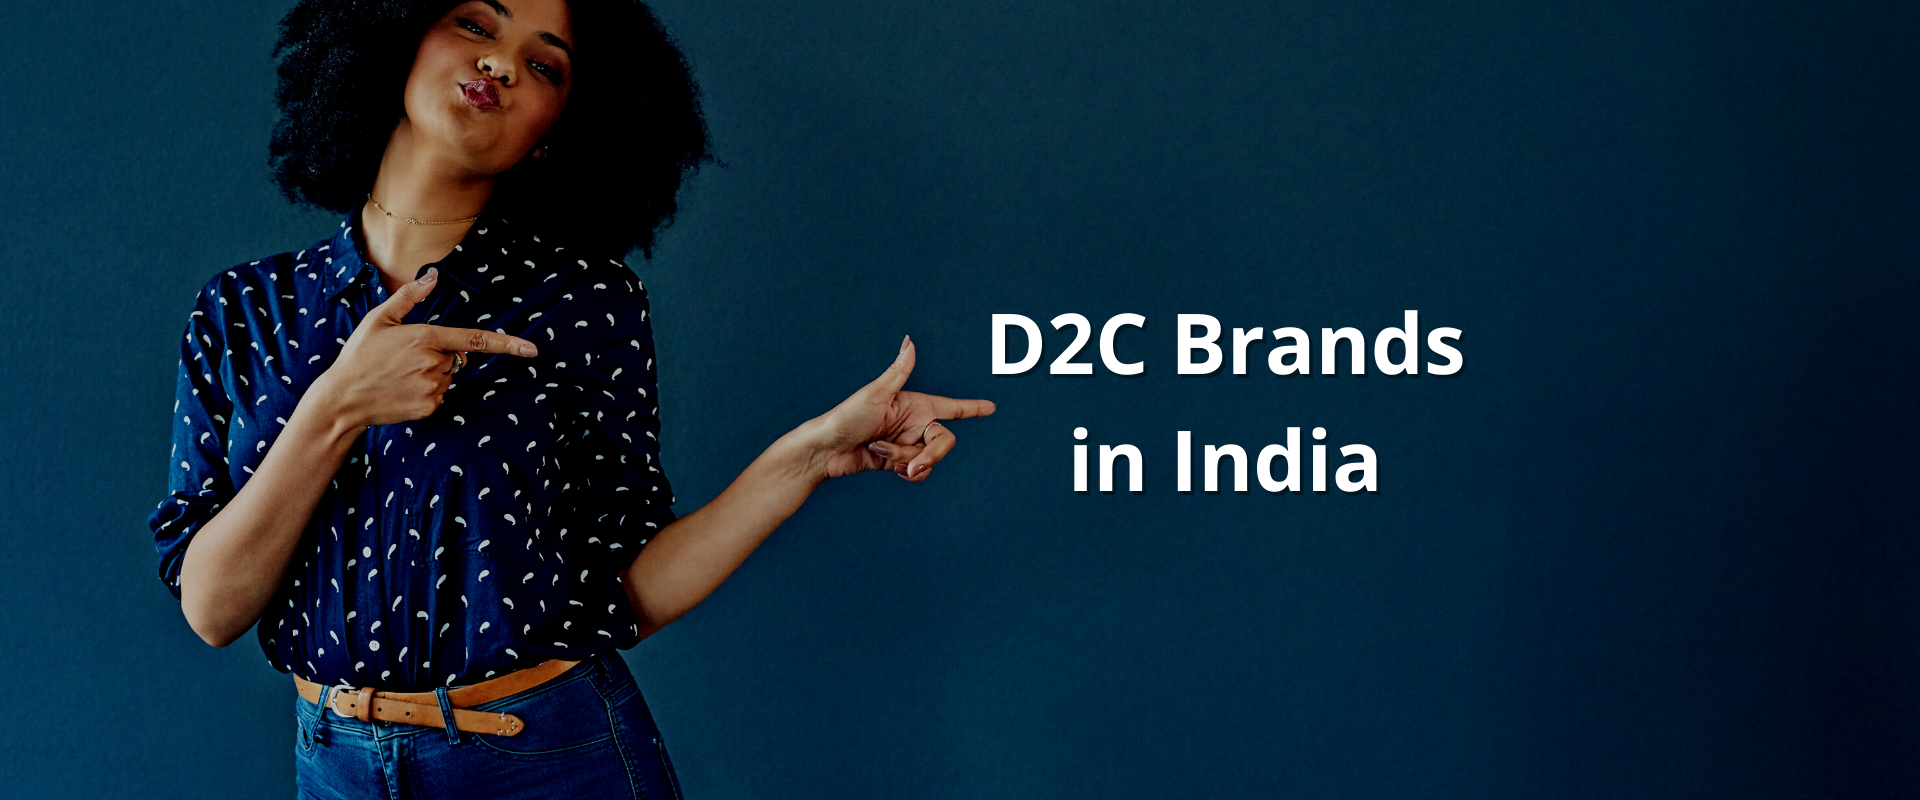 Top D2c brands in India